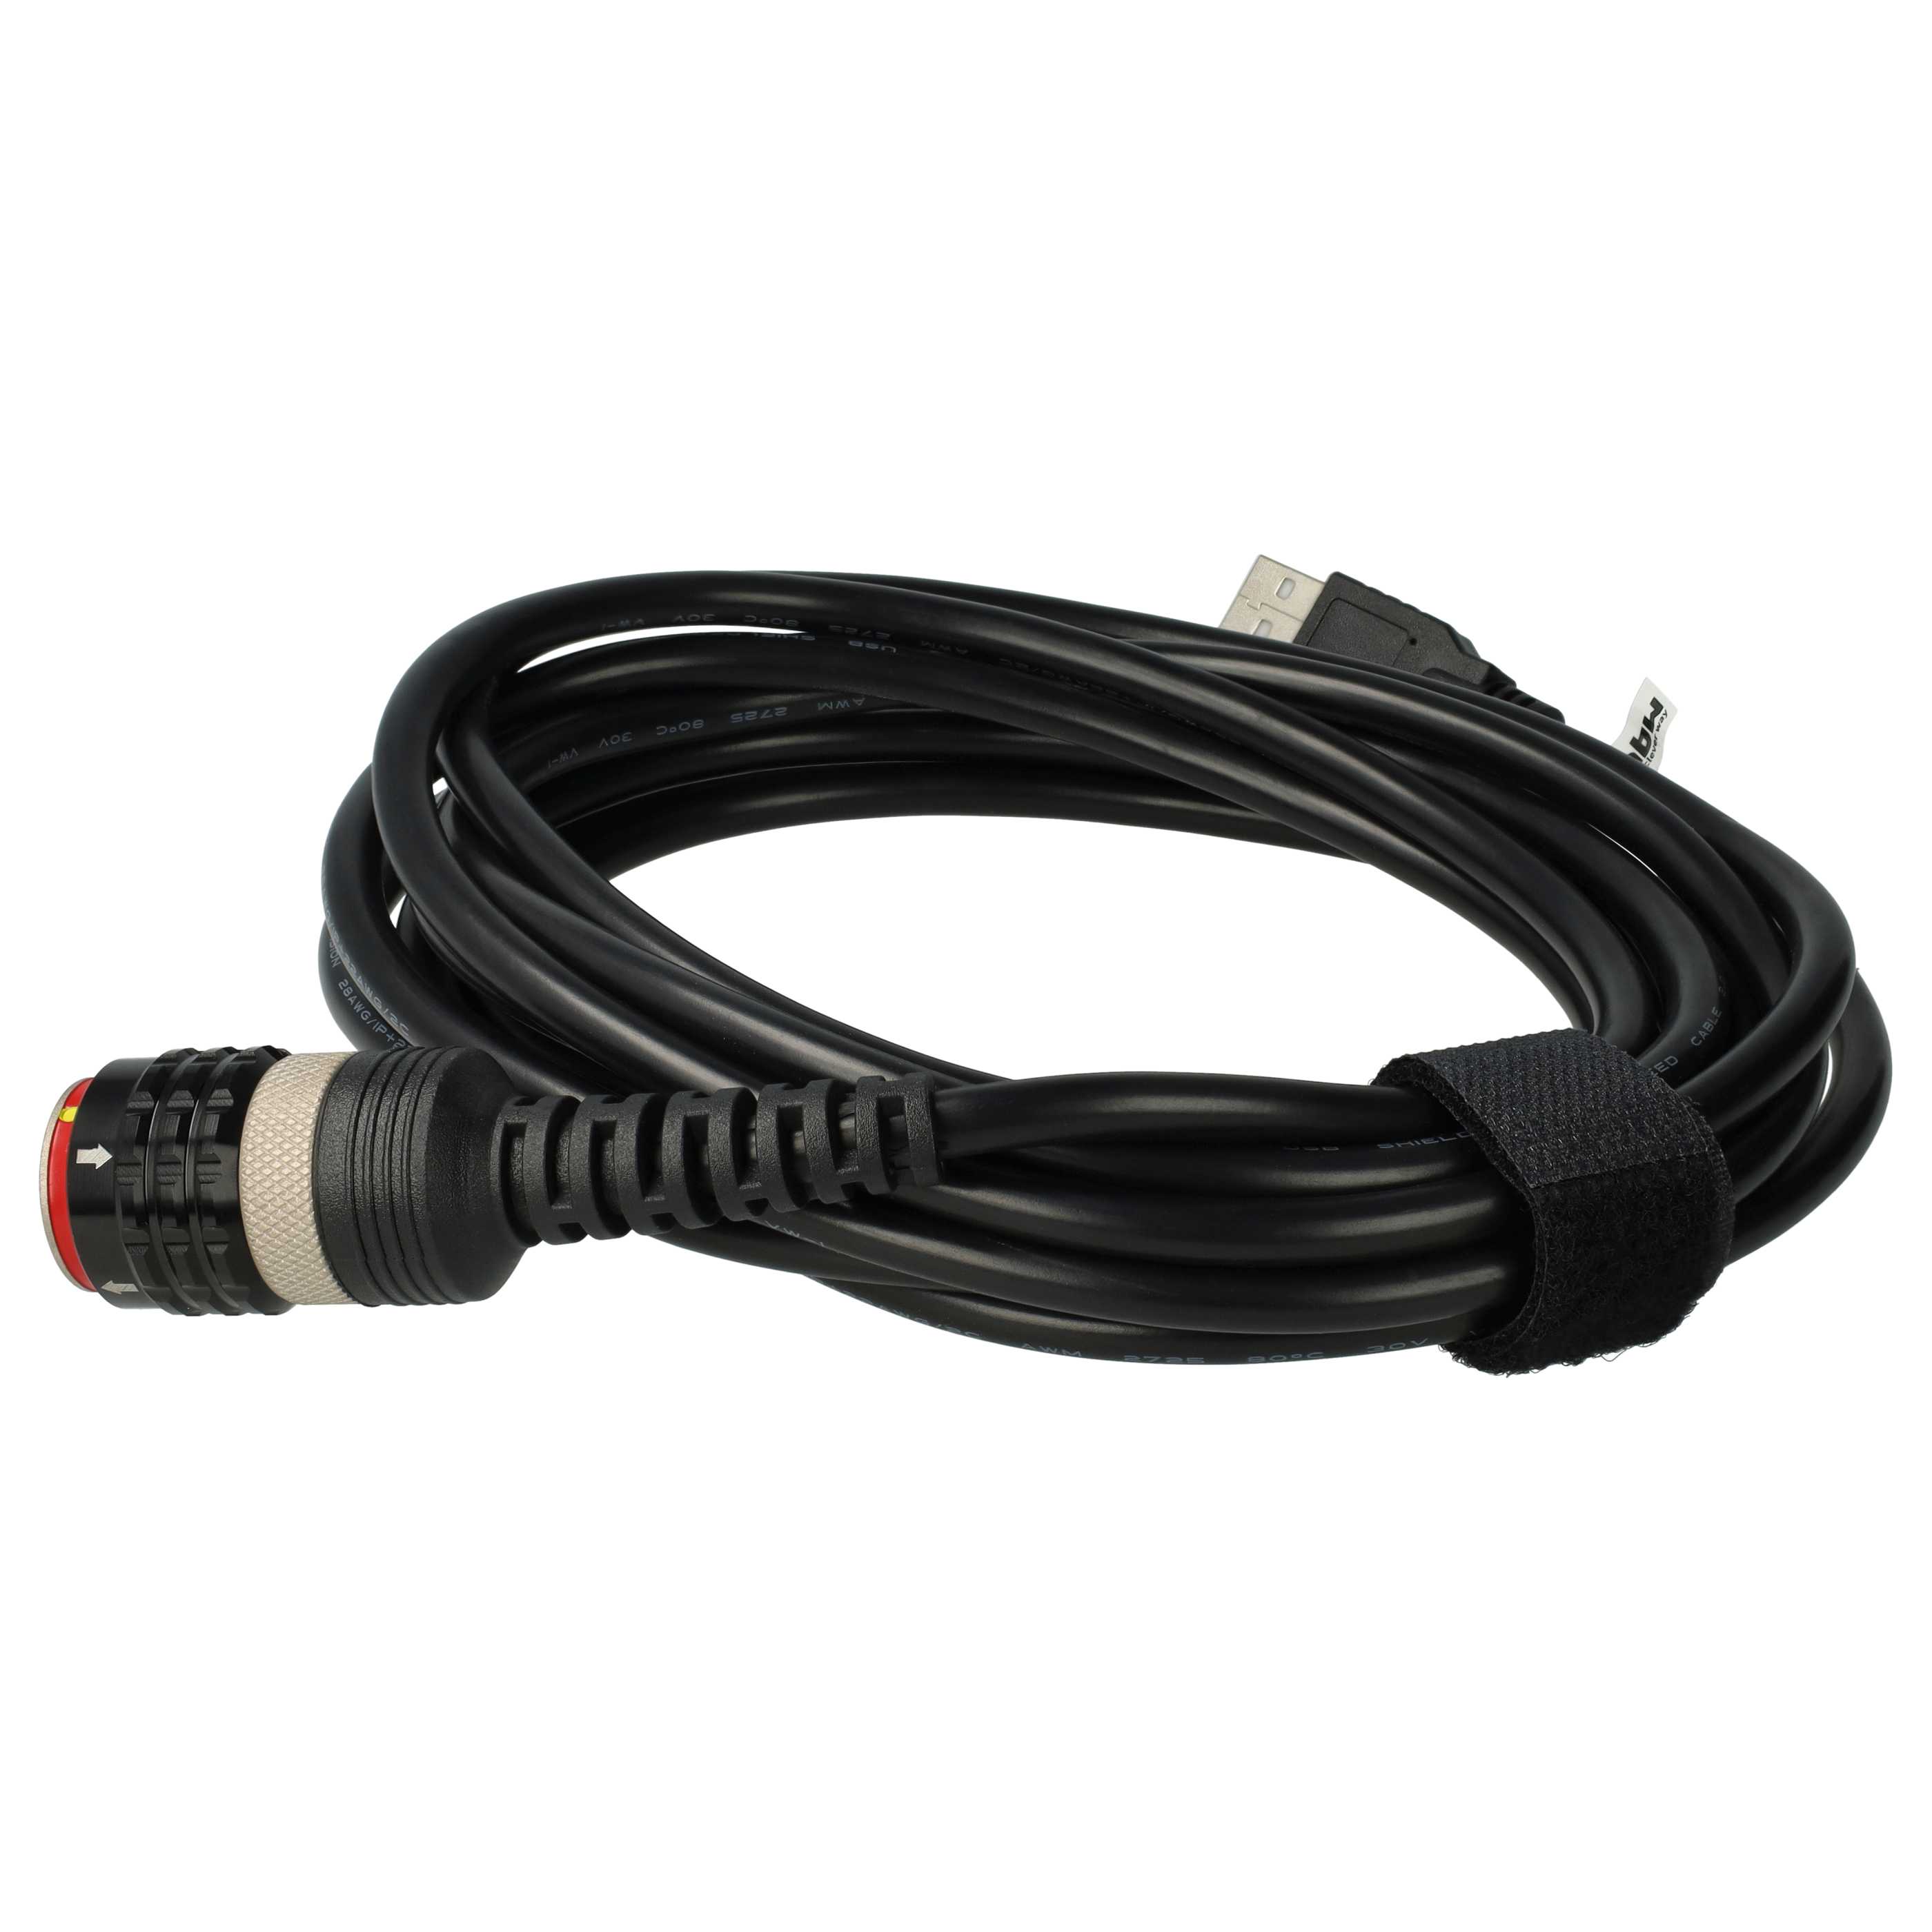 USB-Adapterkabel passend für Volvo Vocom 2 Kfz-Diagnosegerät - 390 cm